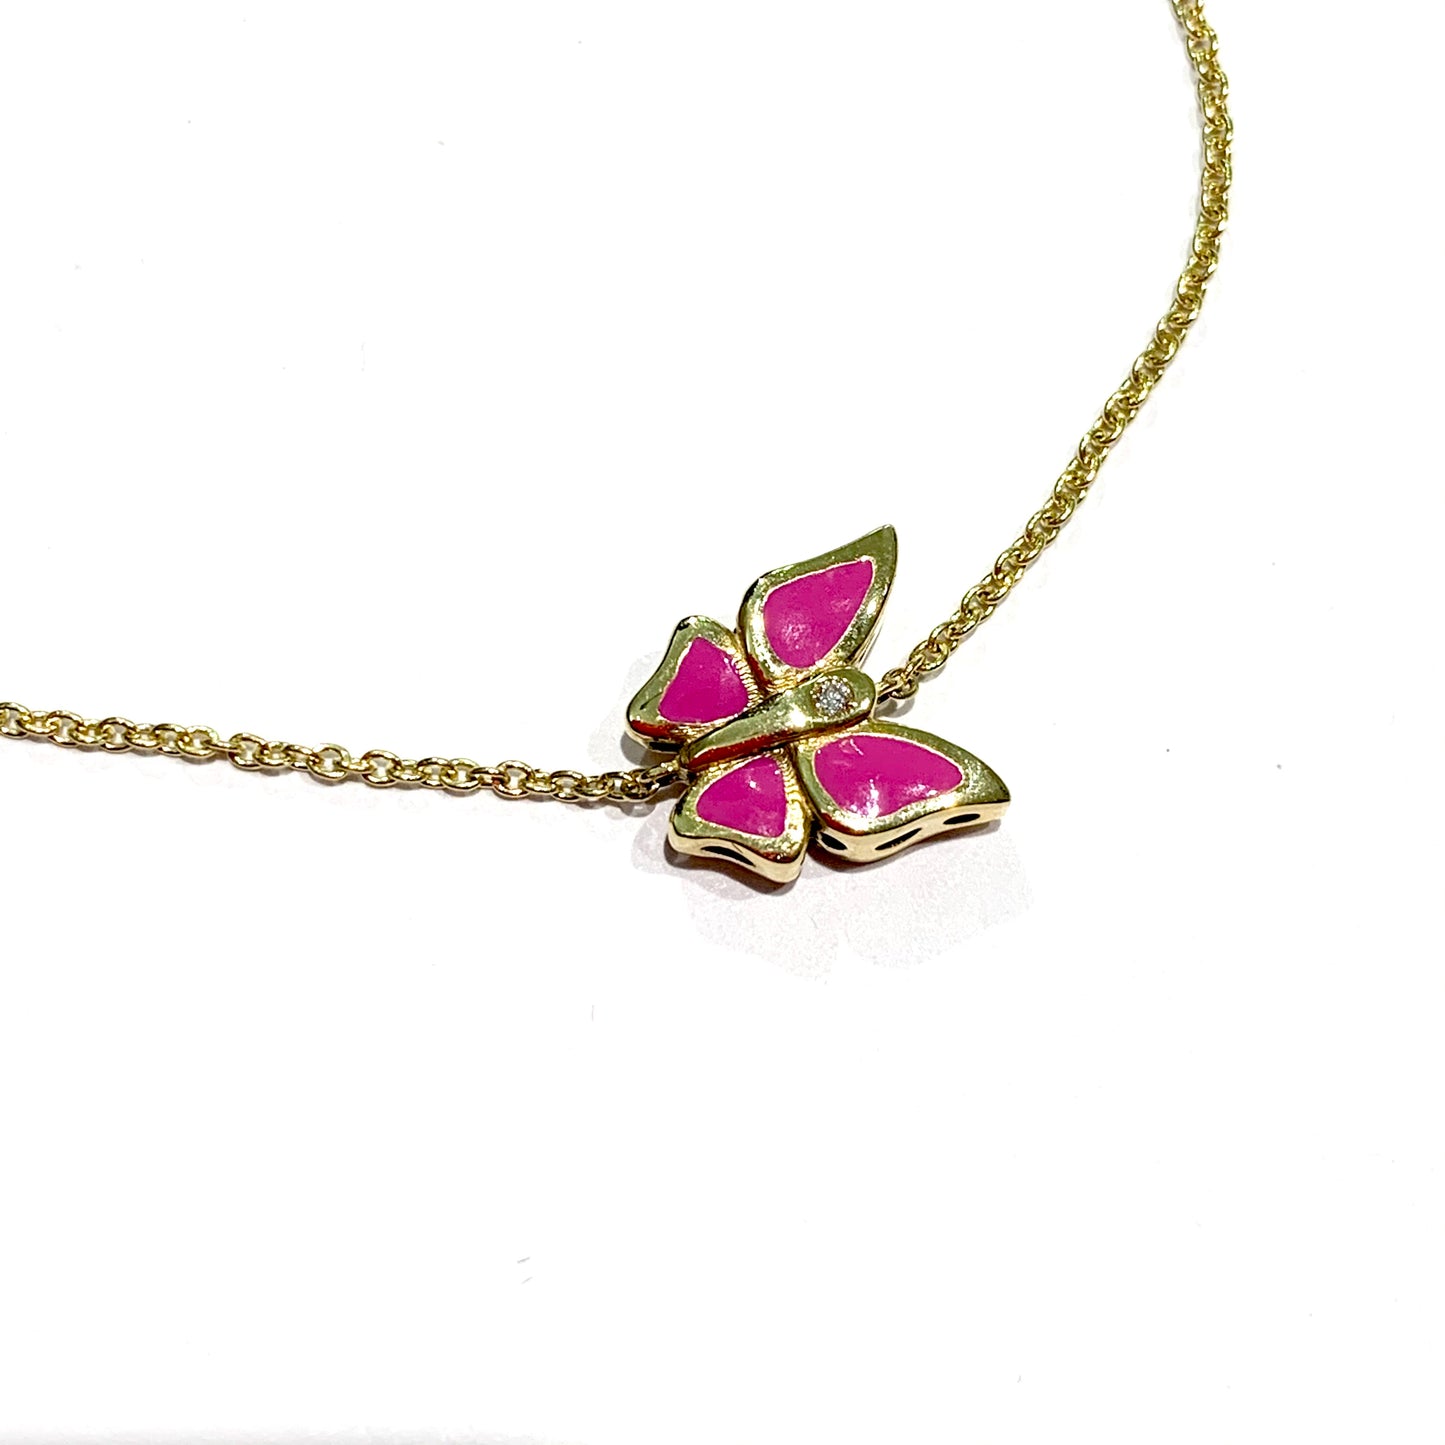 Bracciale in oro giallo 18kt con farfalla ricoperta da smalto naturale rosa.  Lunghezza regolabile in tre lunghezze: 14 cm, 16 cm oppure 18 cm.  Dimensione farfalla 1 cm.  Spedizione gratuita con confezione regalo. 